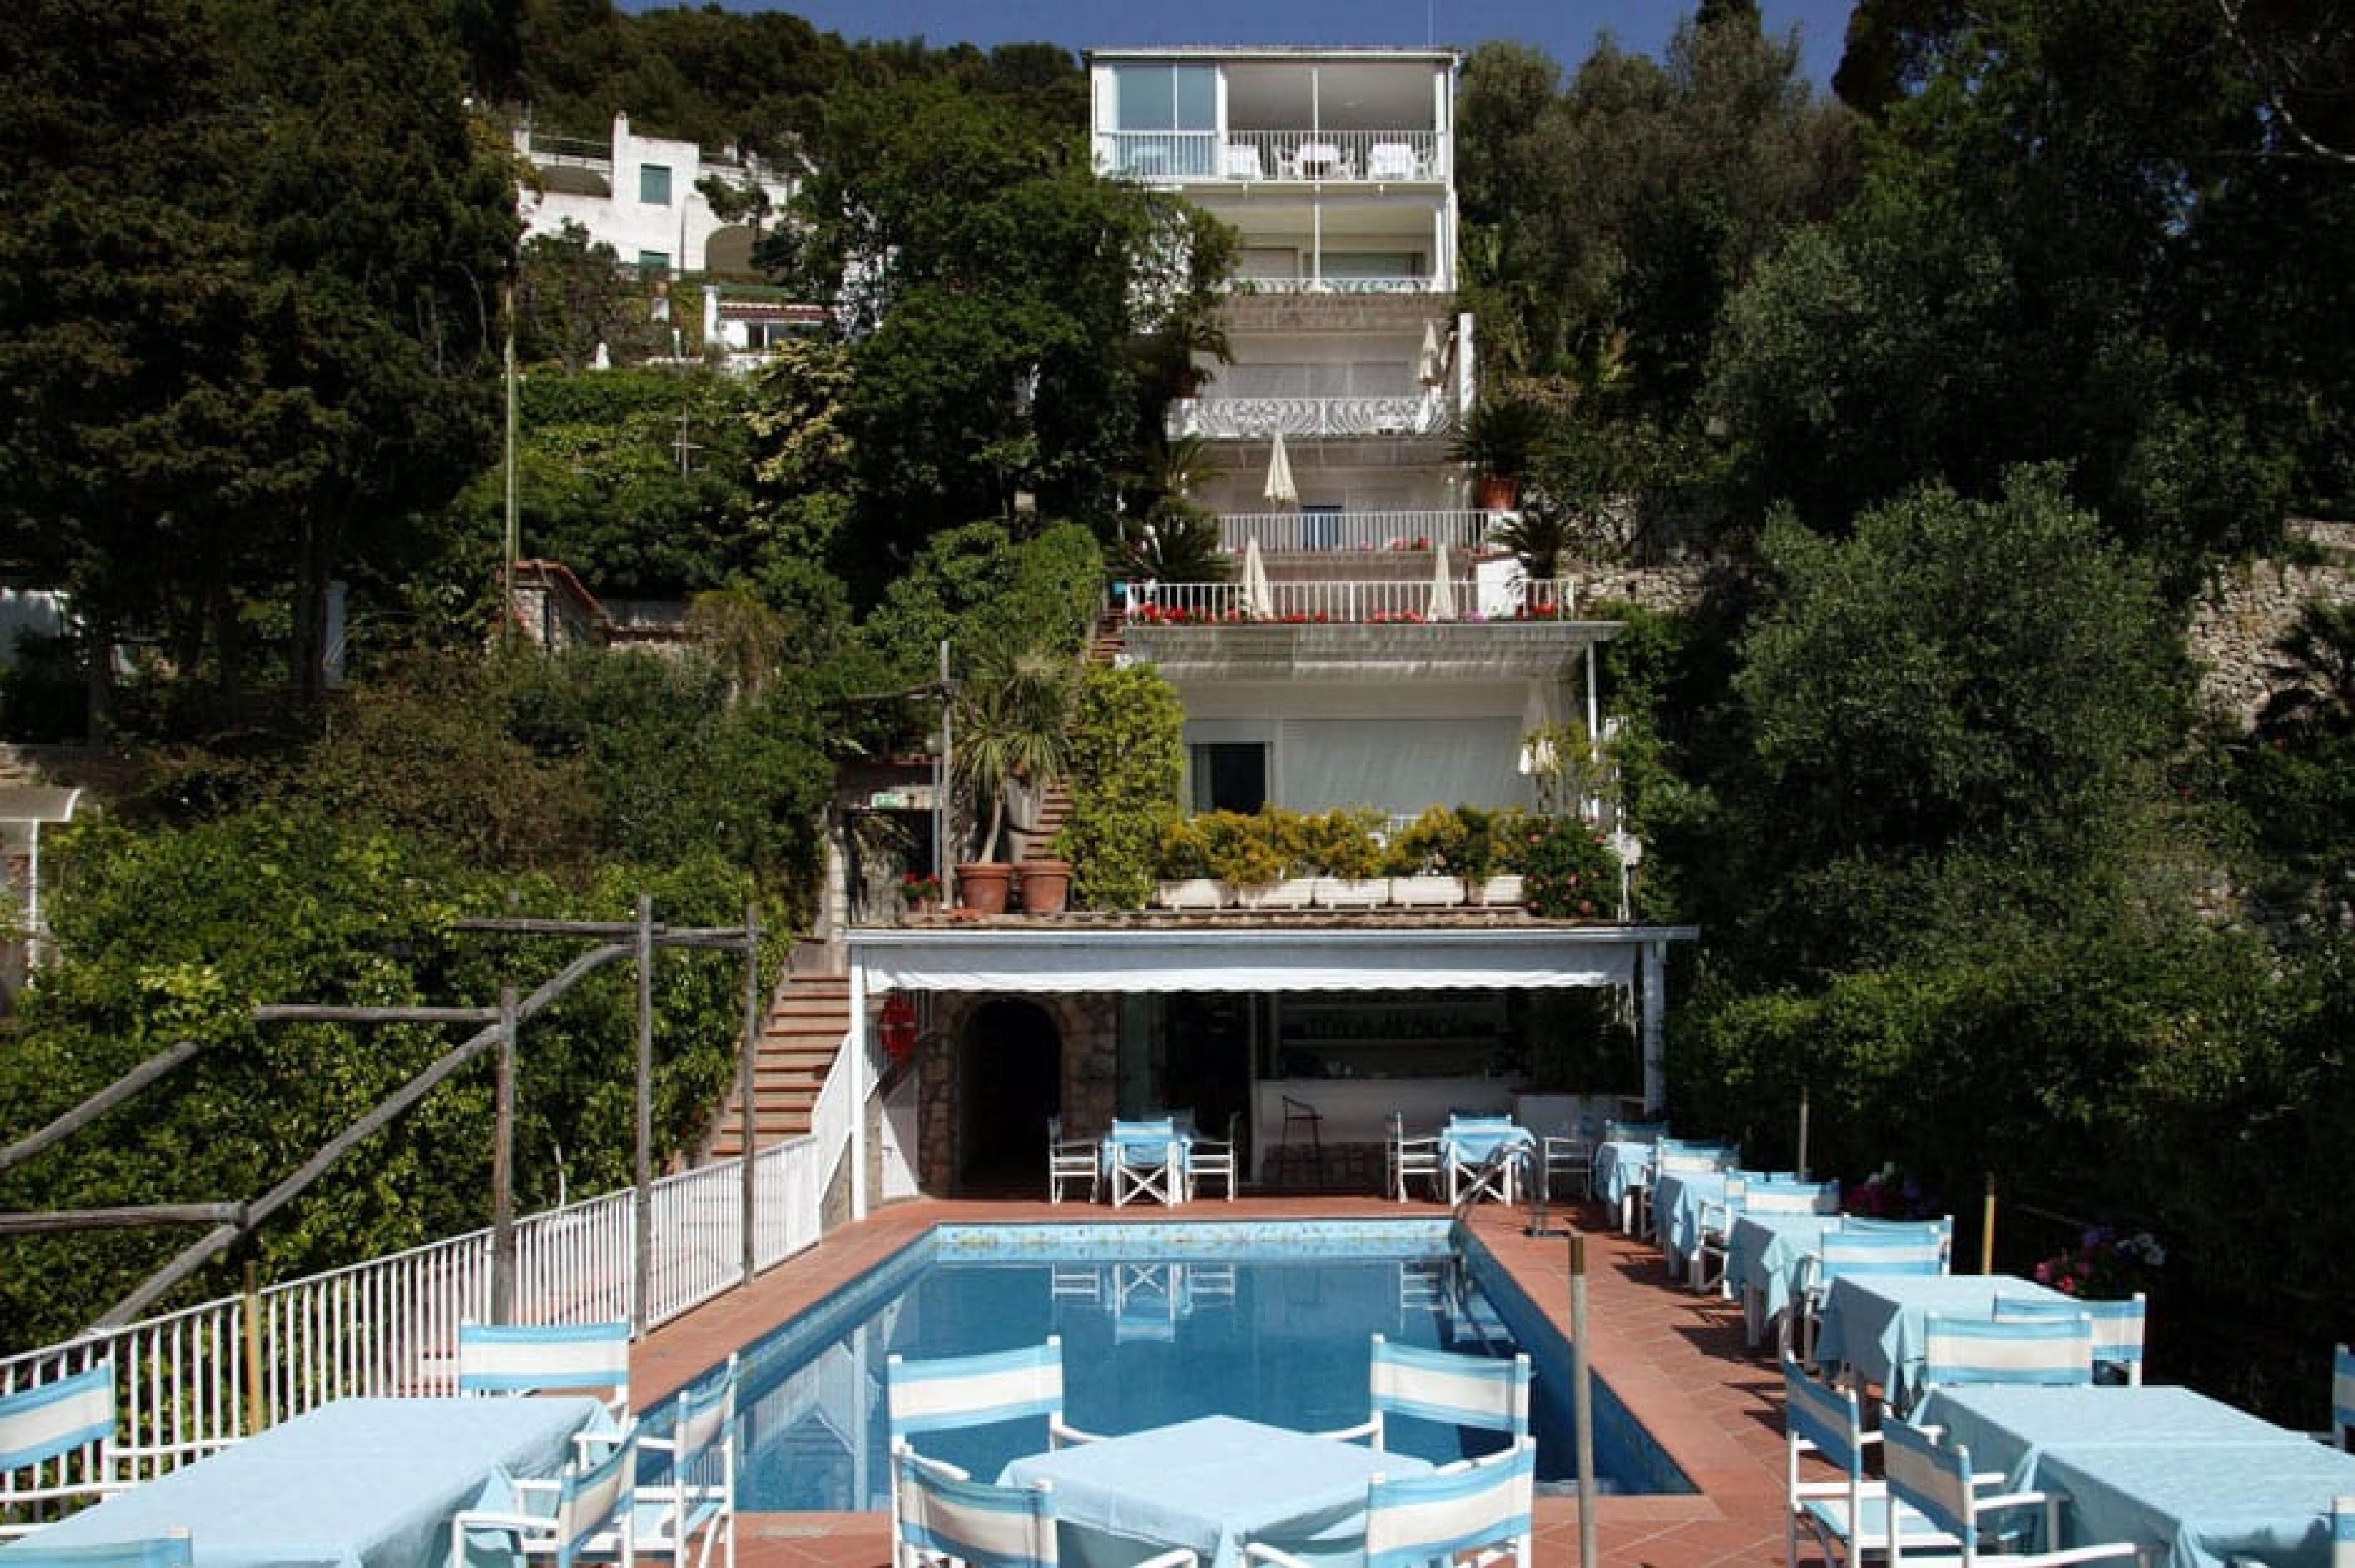 Pool at Hotel Villa Brunella, Capri, Italy - courtesy Villa Brunella